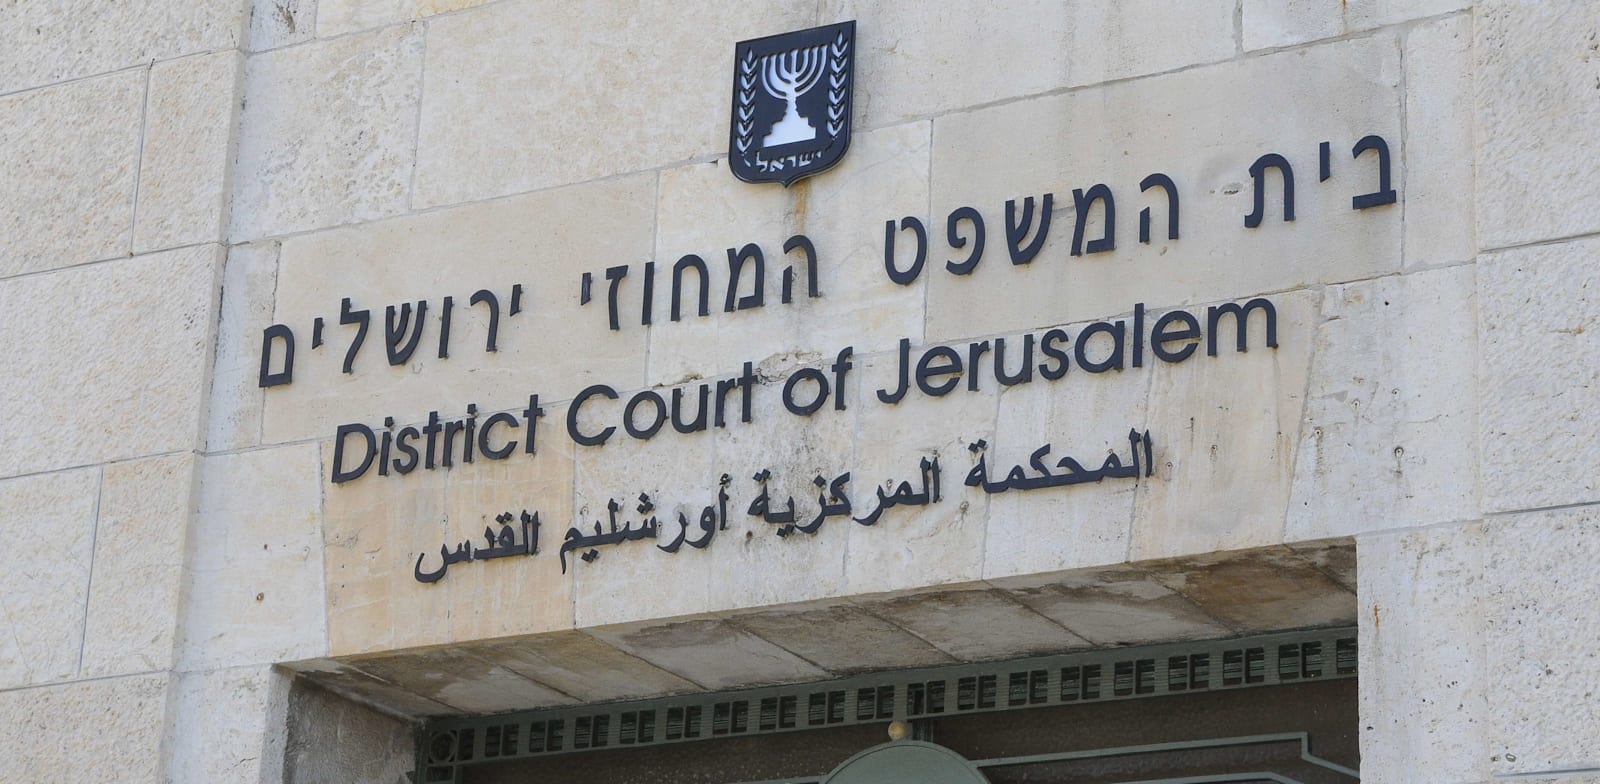 בית המשפט המחוזי בירושלים / צילום: אוריה תדמור